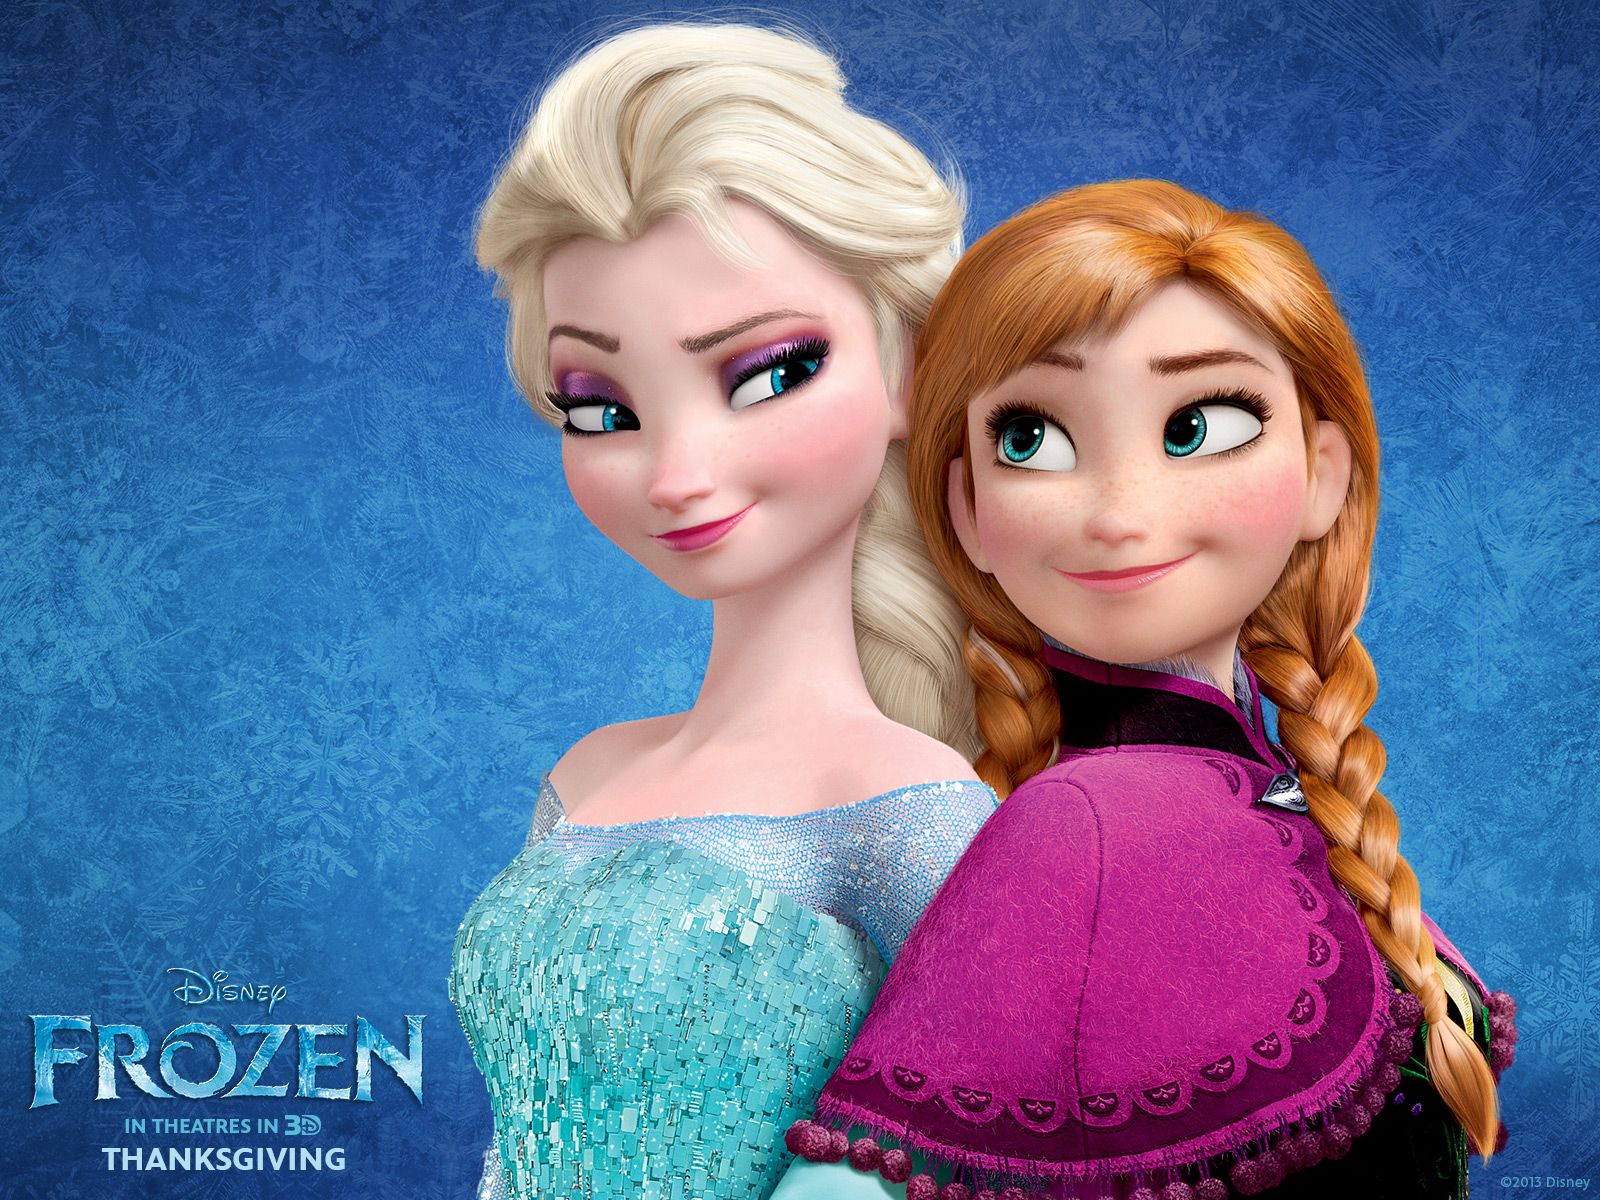 Elsa and Anna Wallpapers - Frozen Wallpaper 35894707 - Fanpop